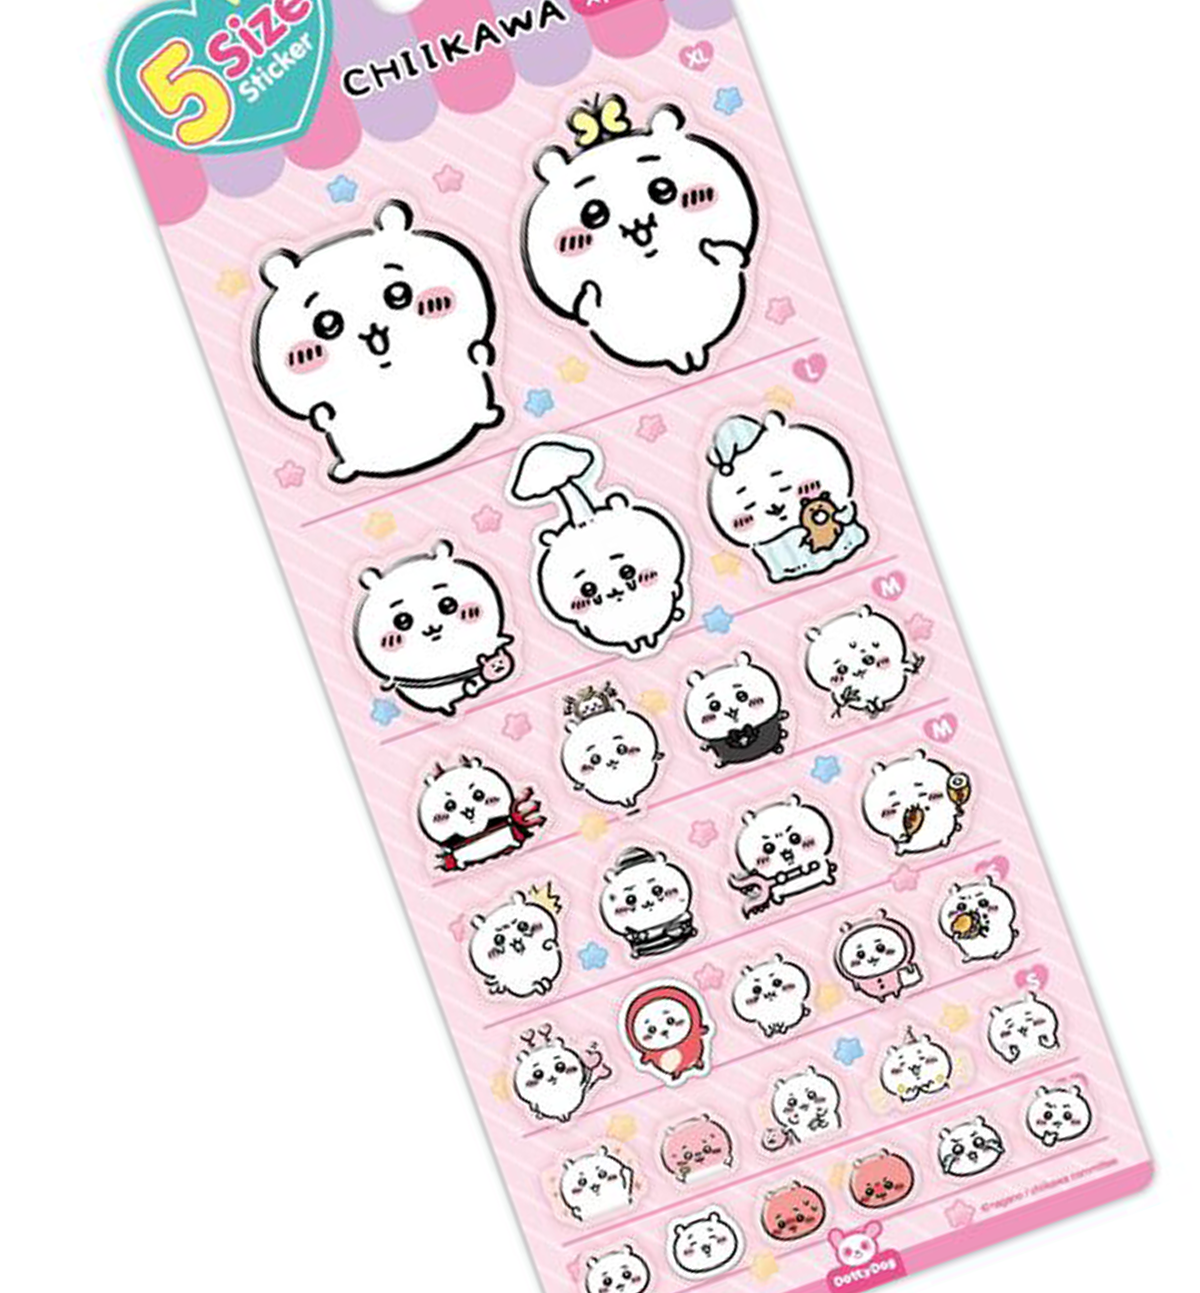 Chiikawa 5 Size Sticker [Pink]